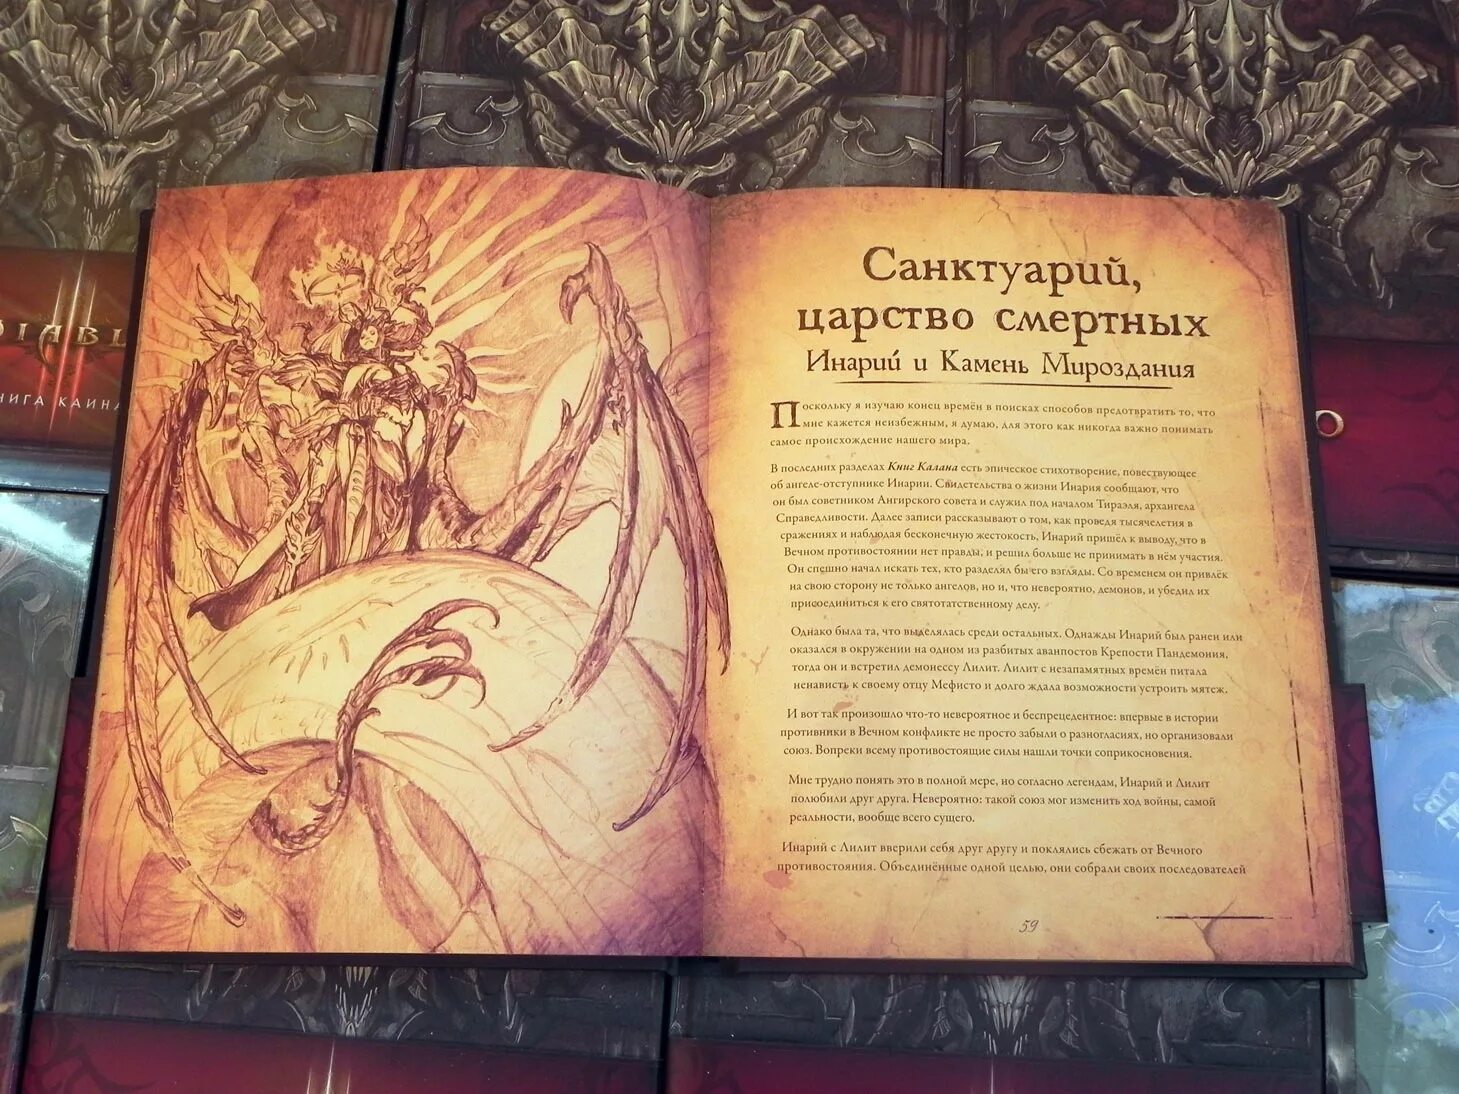 Пять три книга. Артбук Diablo – книга Каина. Diablo III. Книга Каина. Артбук диабло 3. Артбук Diablo – книга Тираэля.